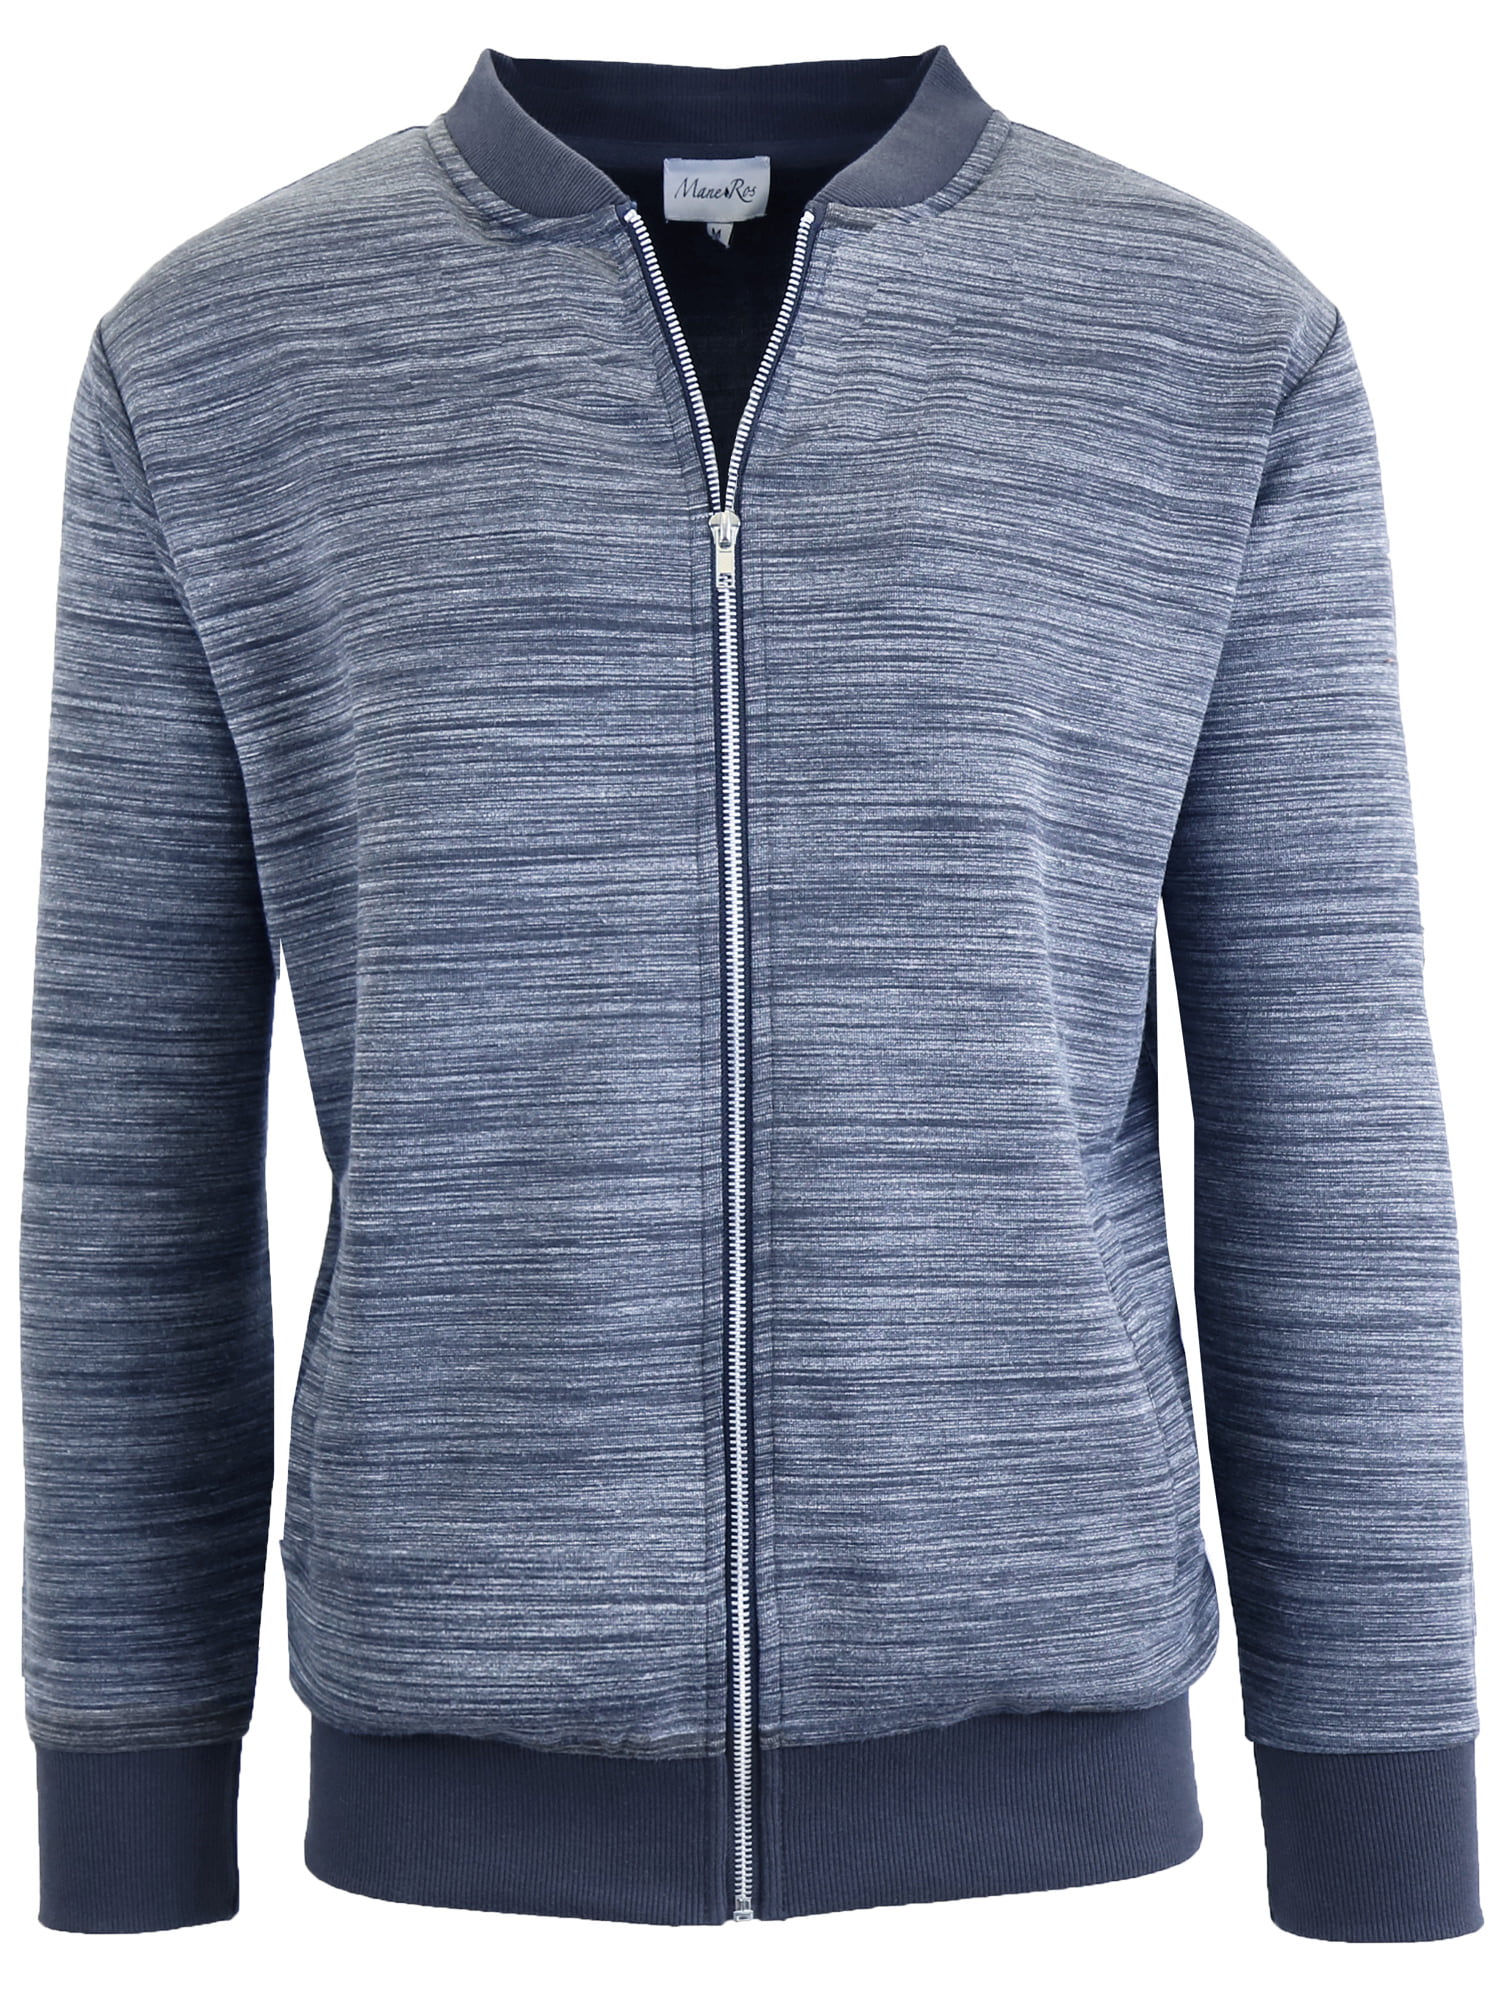 Men's Tech Fleece Stretch Sweater Jacket (S-2XL) - Walmart.com